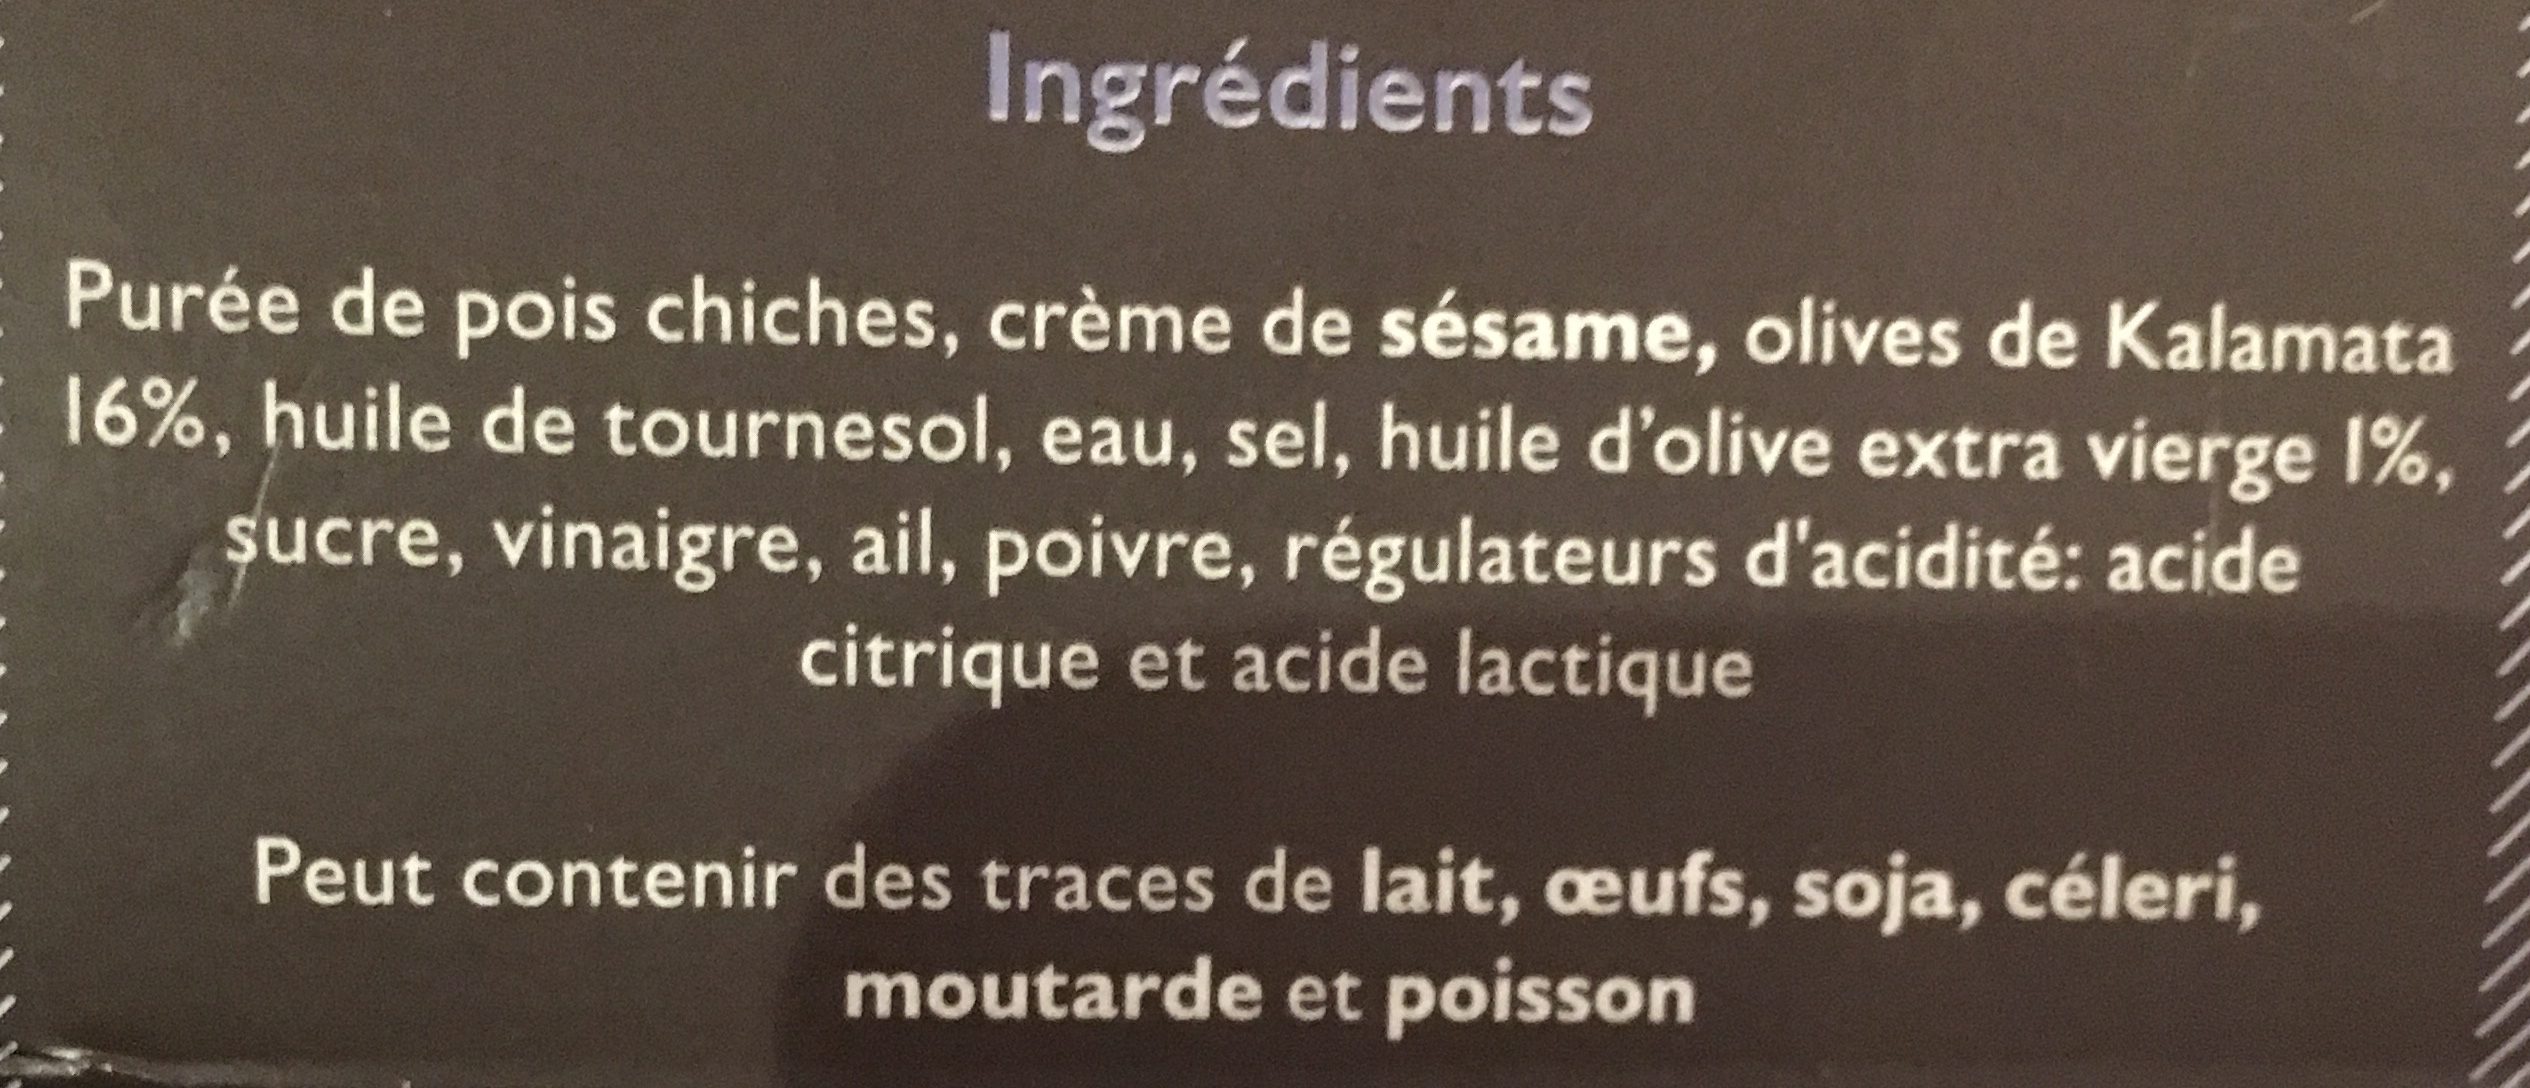 Houmous aux olives de kalamata - Ingredients - fr